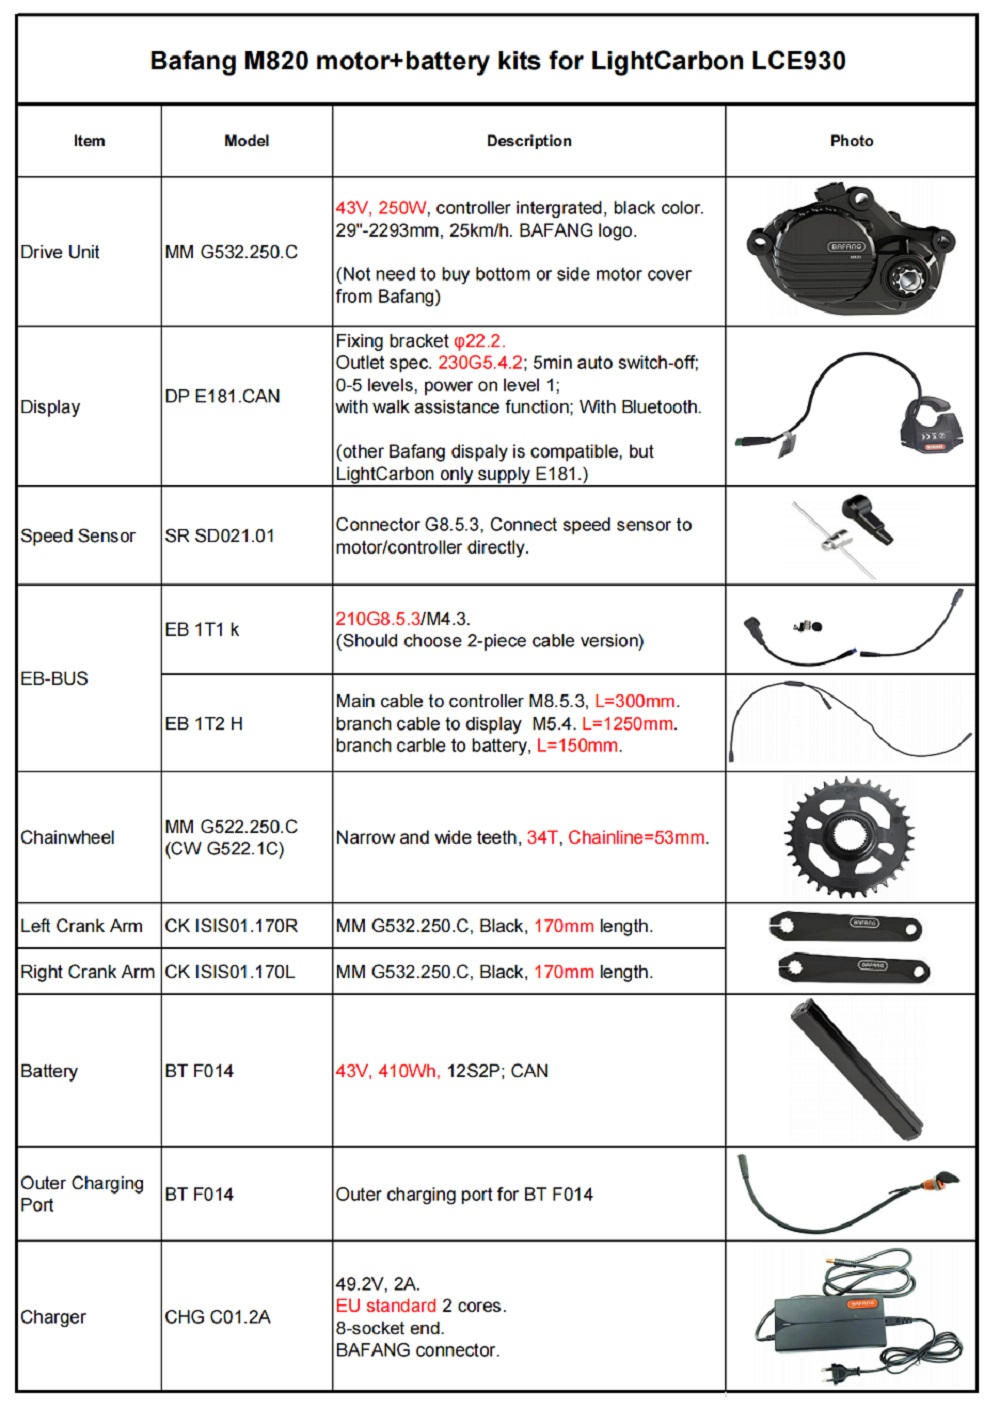 Especificação adequada dos kits de motor + bateria LCE930 Bafang M820